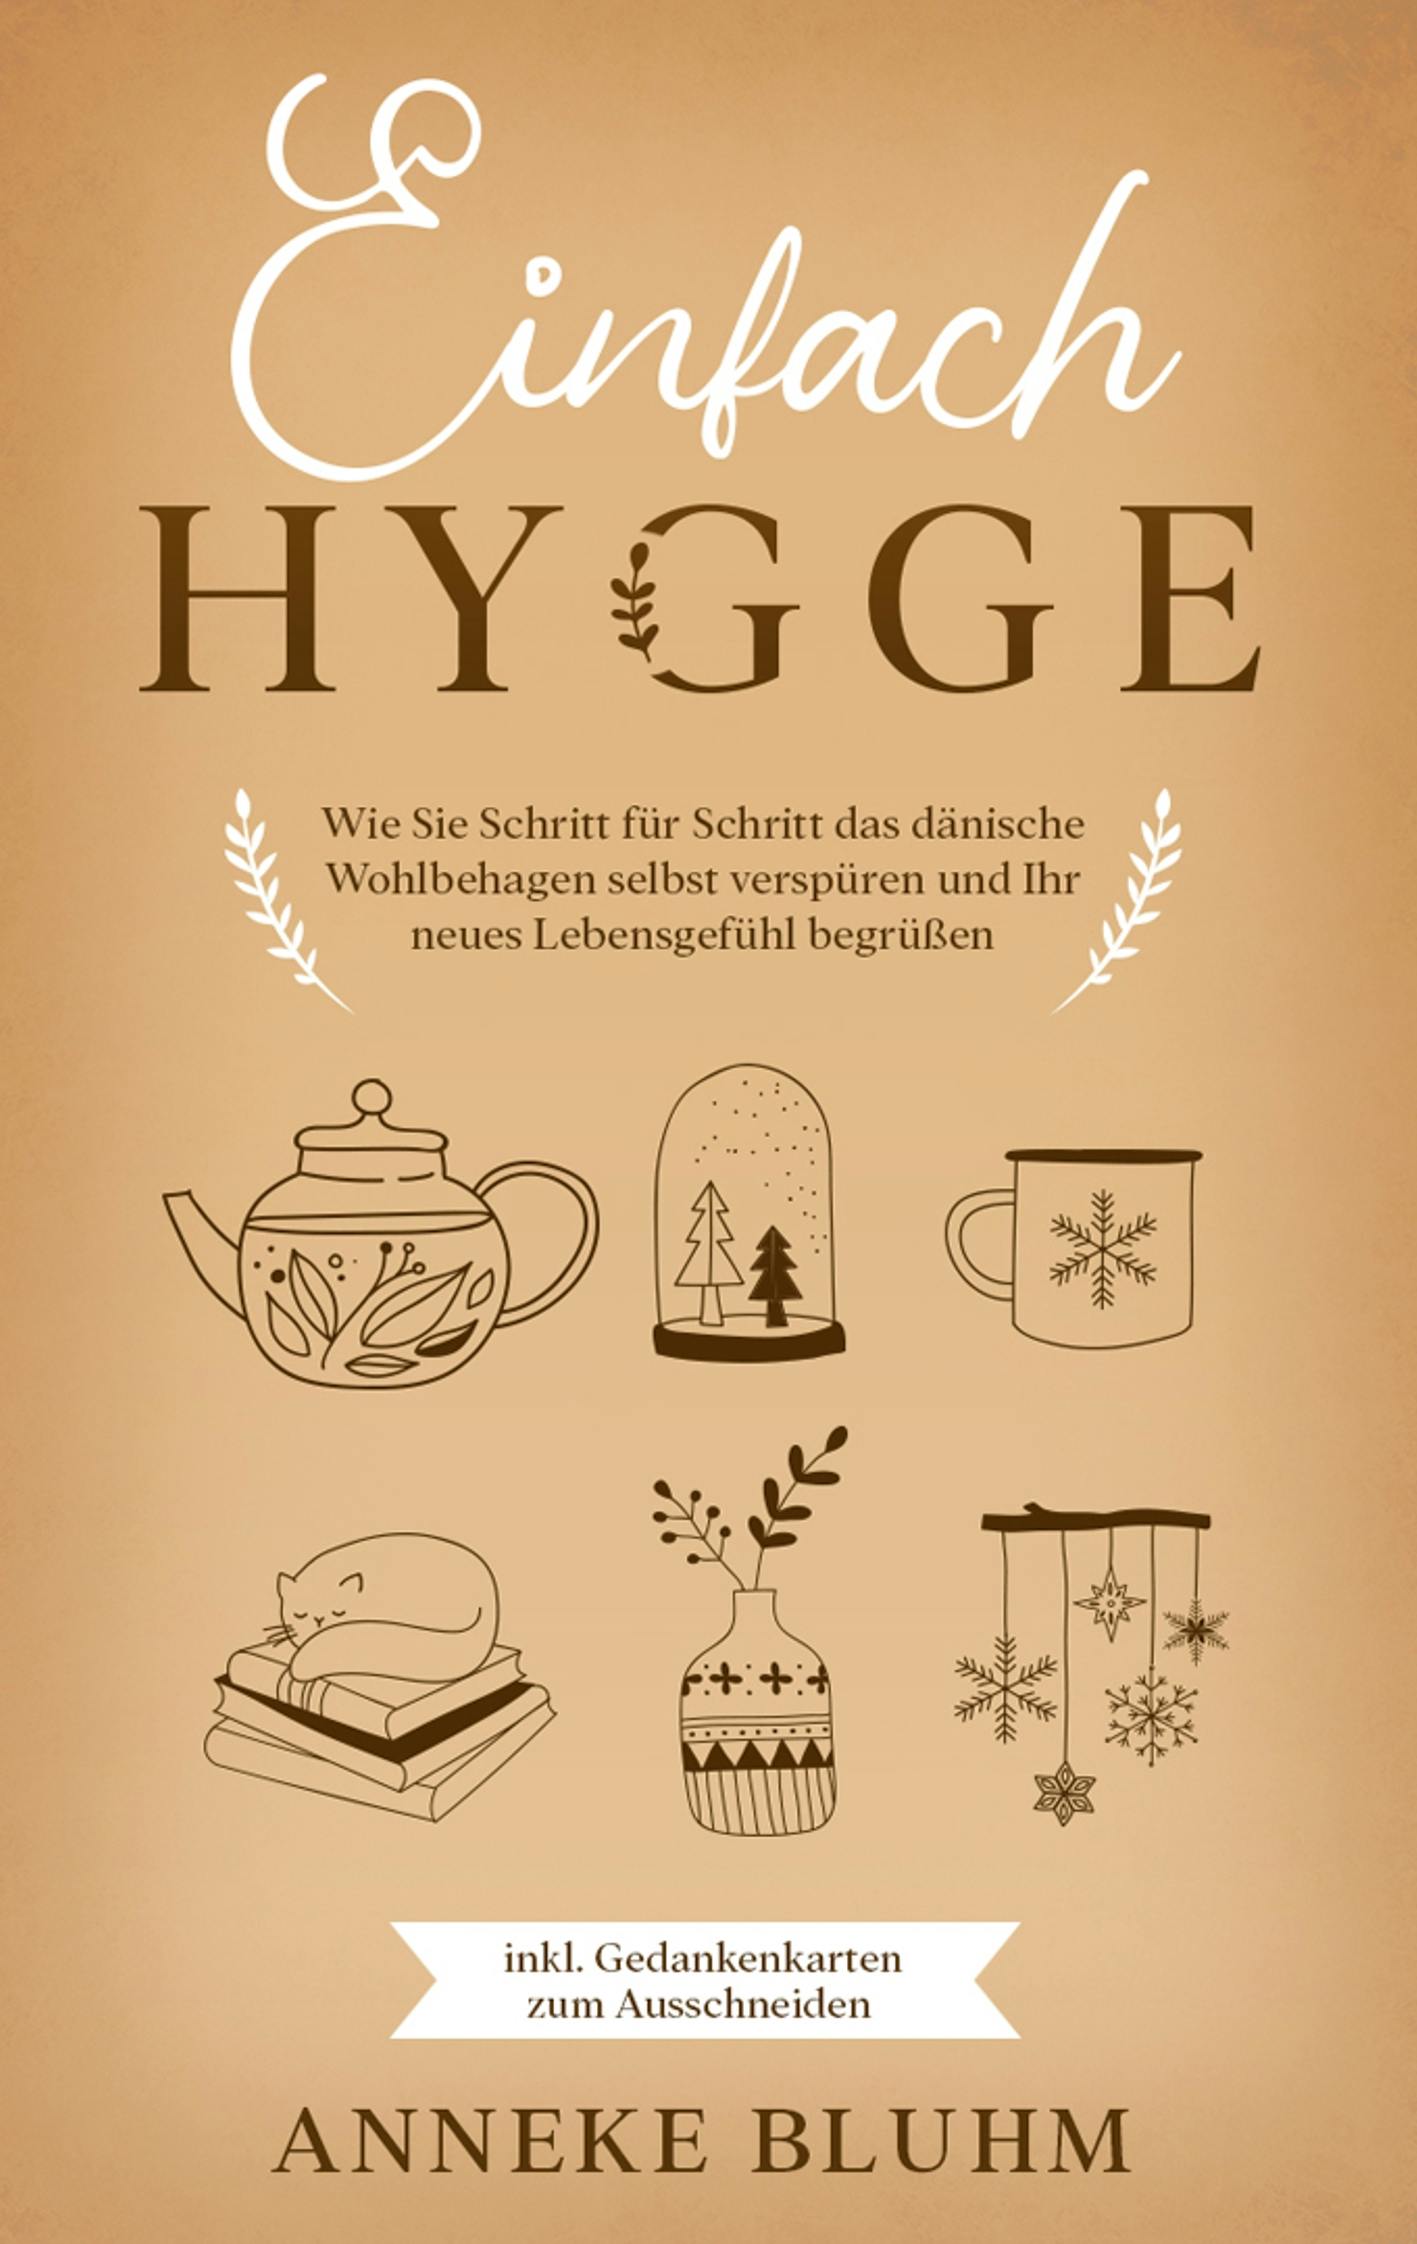 Einfach Hygge: Wie Sie Schritt für Schritt das dänische Wohlbehagen selbst verspüren und Ihr neues Lebensgefühl begrüßen - inkl. Gedankenkarten zum Ausschneiden - Anneke Bluhm